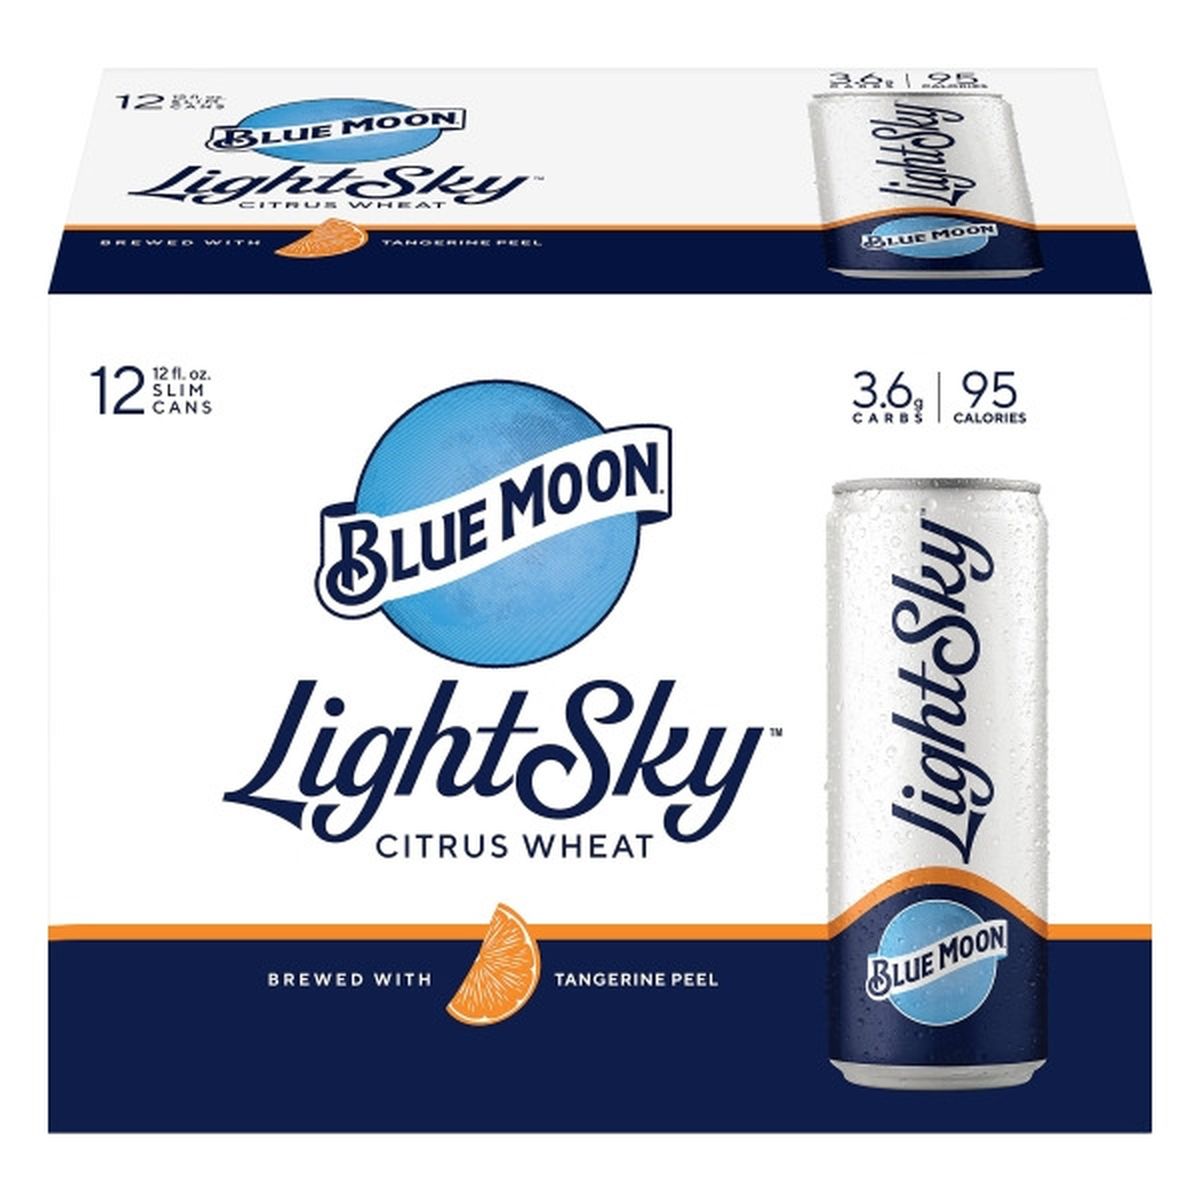 Calories in Blue Moon Light Sky Citrus Wheat Ale 12/12 oz cans